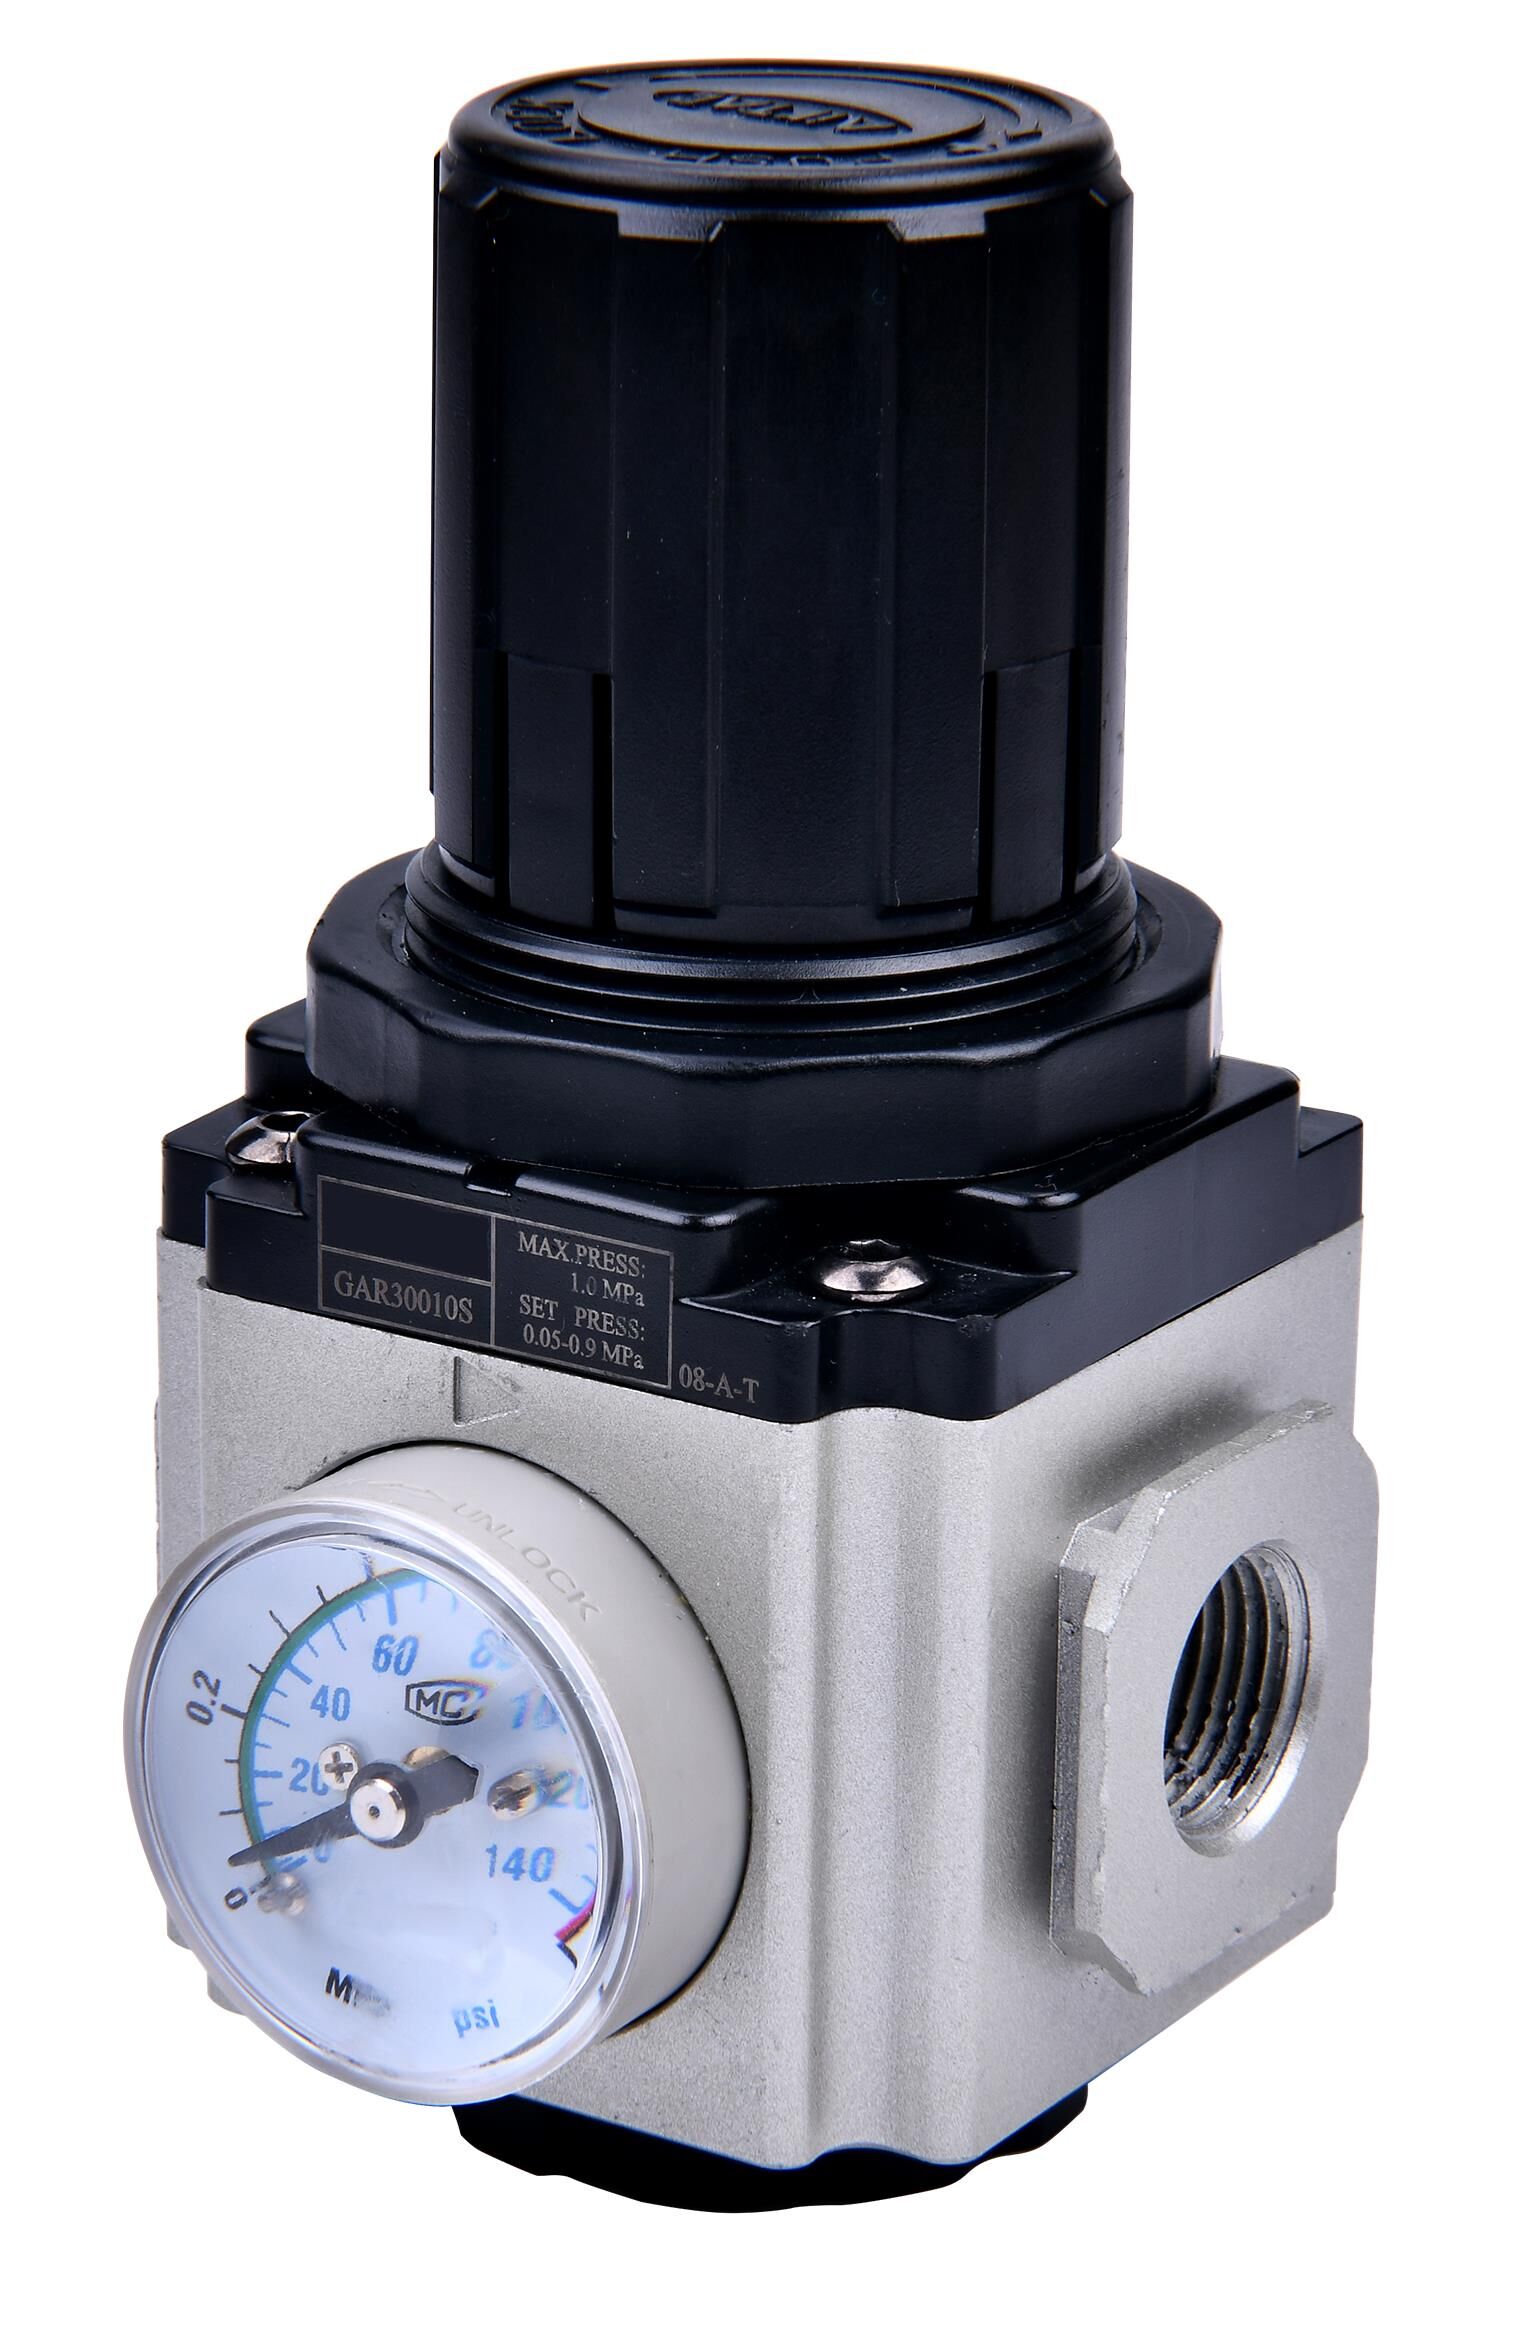 Regolatore di pressione -GA-, manometro incluso, BG 400, G 3/8, 0,5 - 9 bar